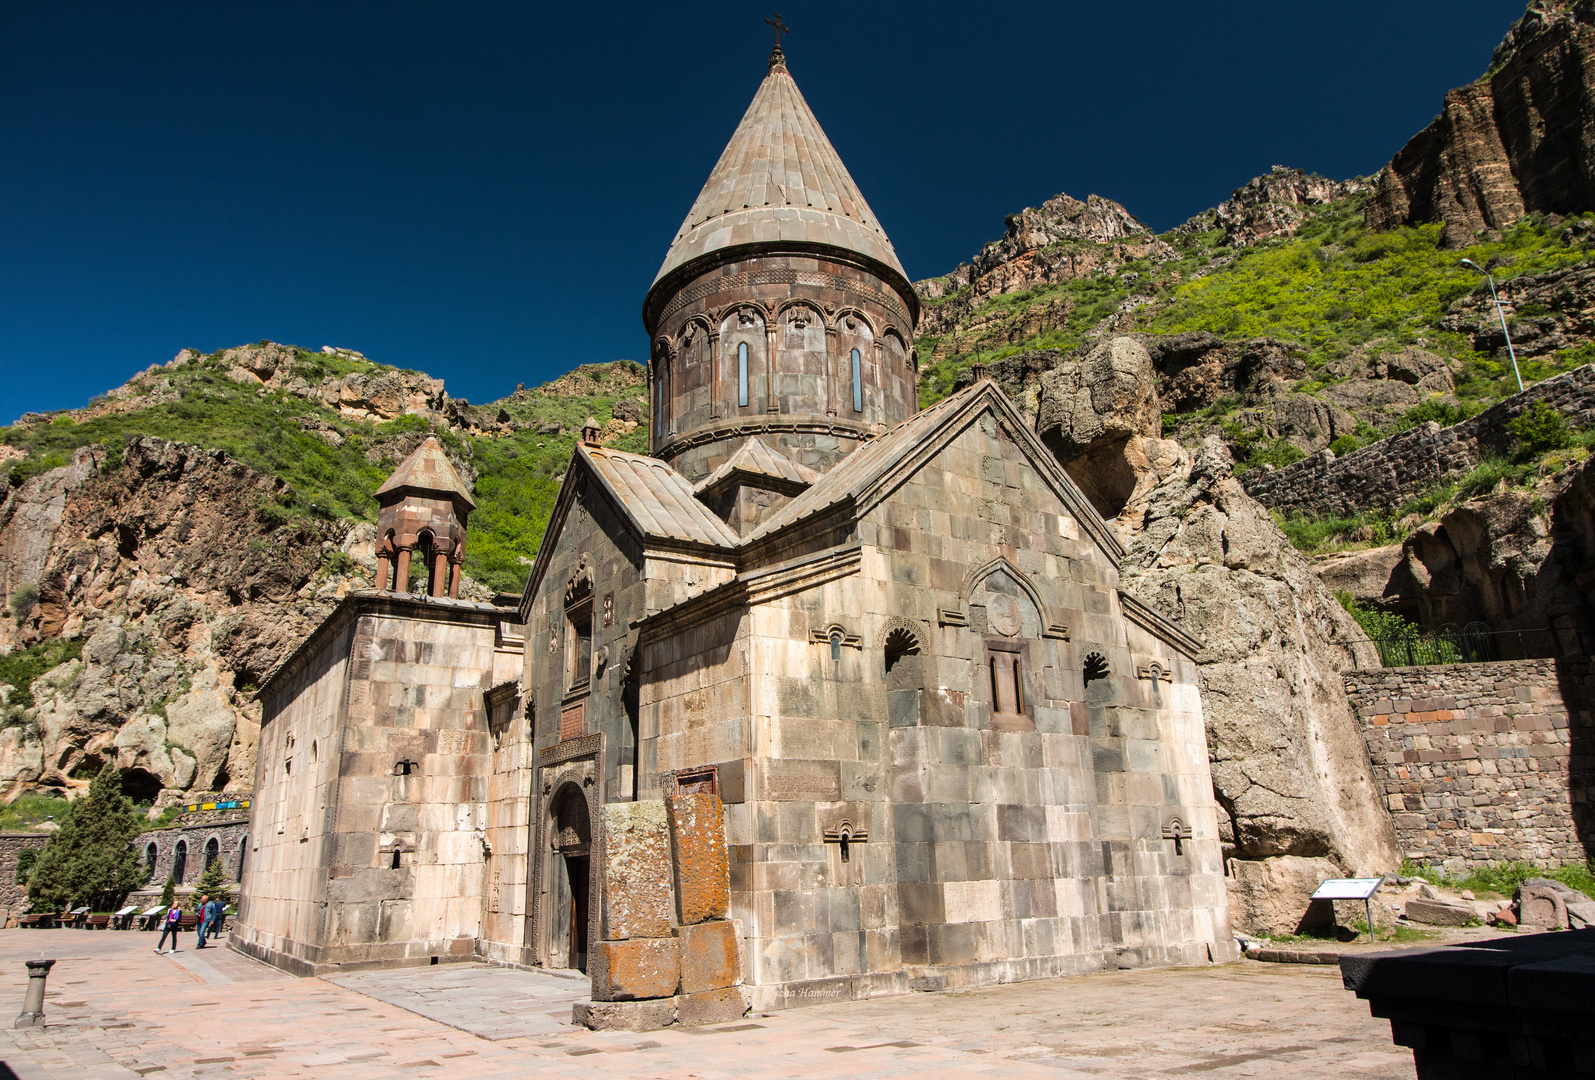 Geghard Klosterkirche - Armenien